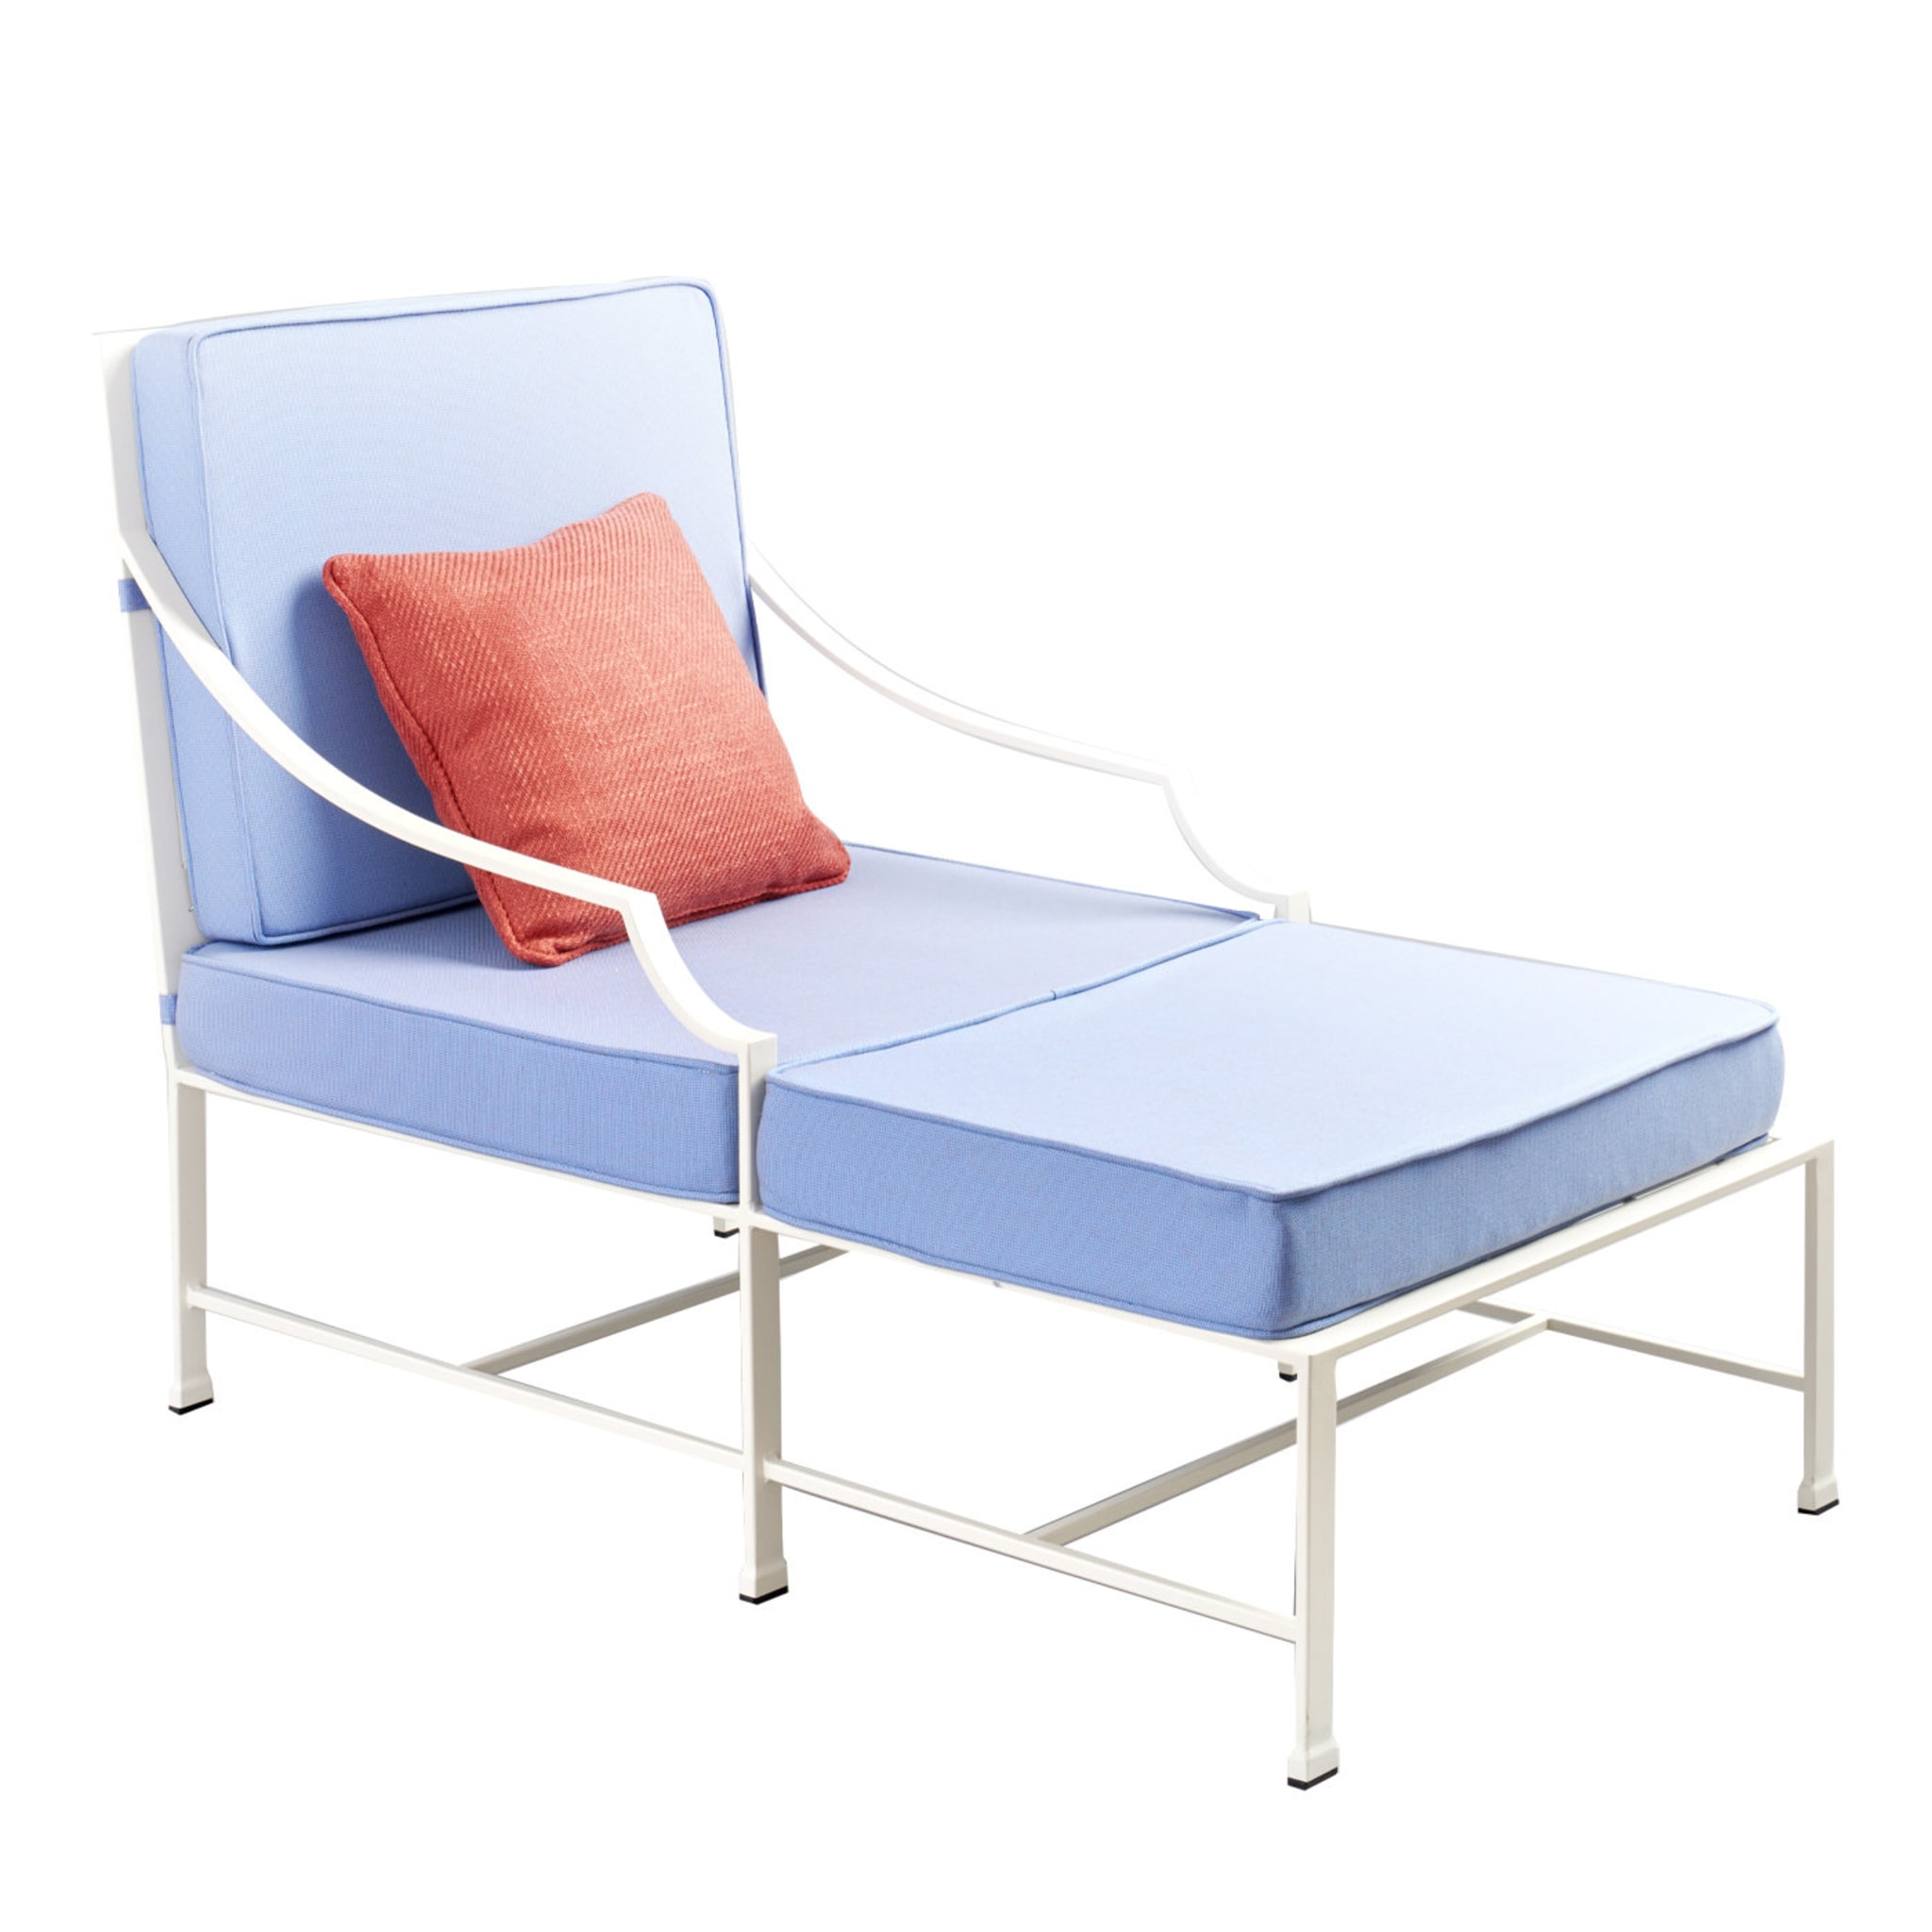 Perennial Chaise Lounge by Silvia Refaldi - Main view